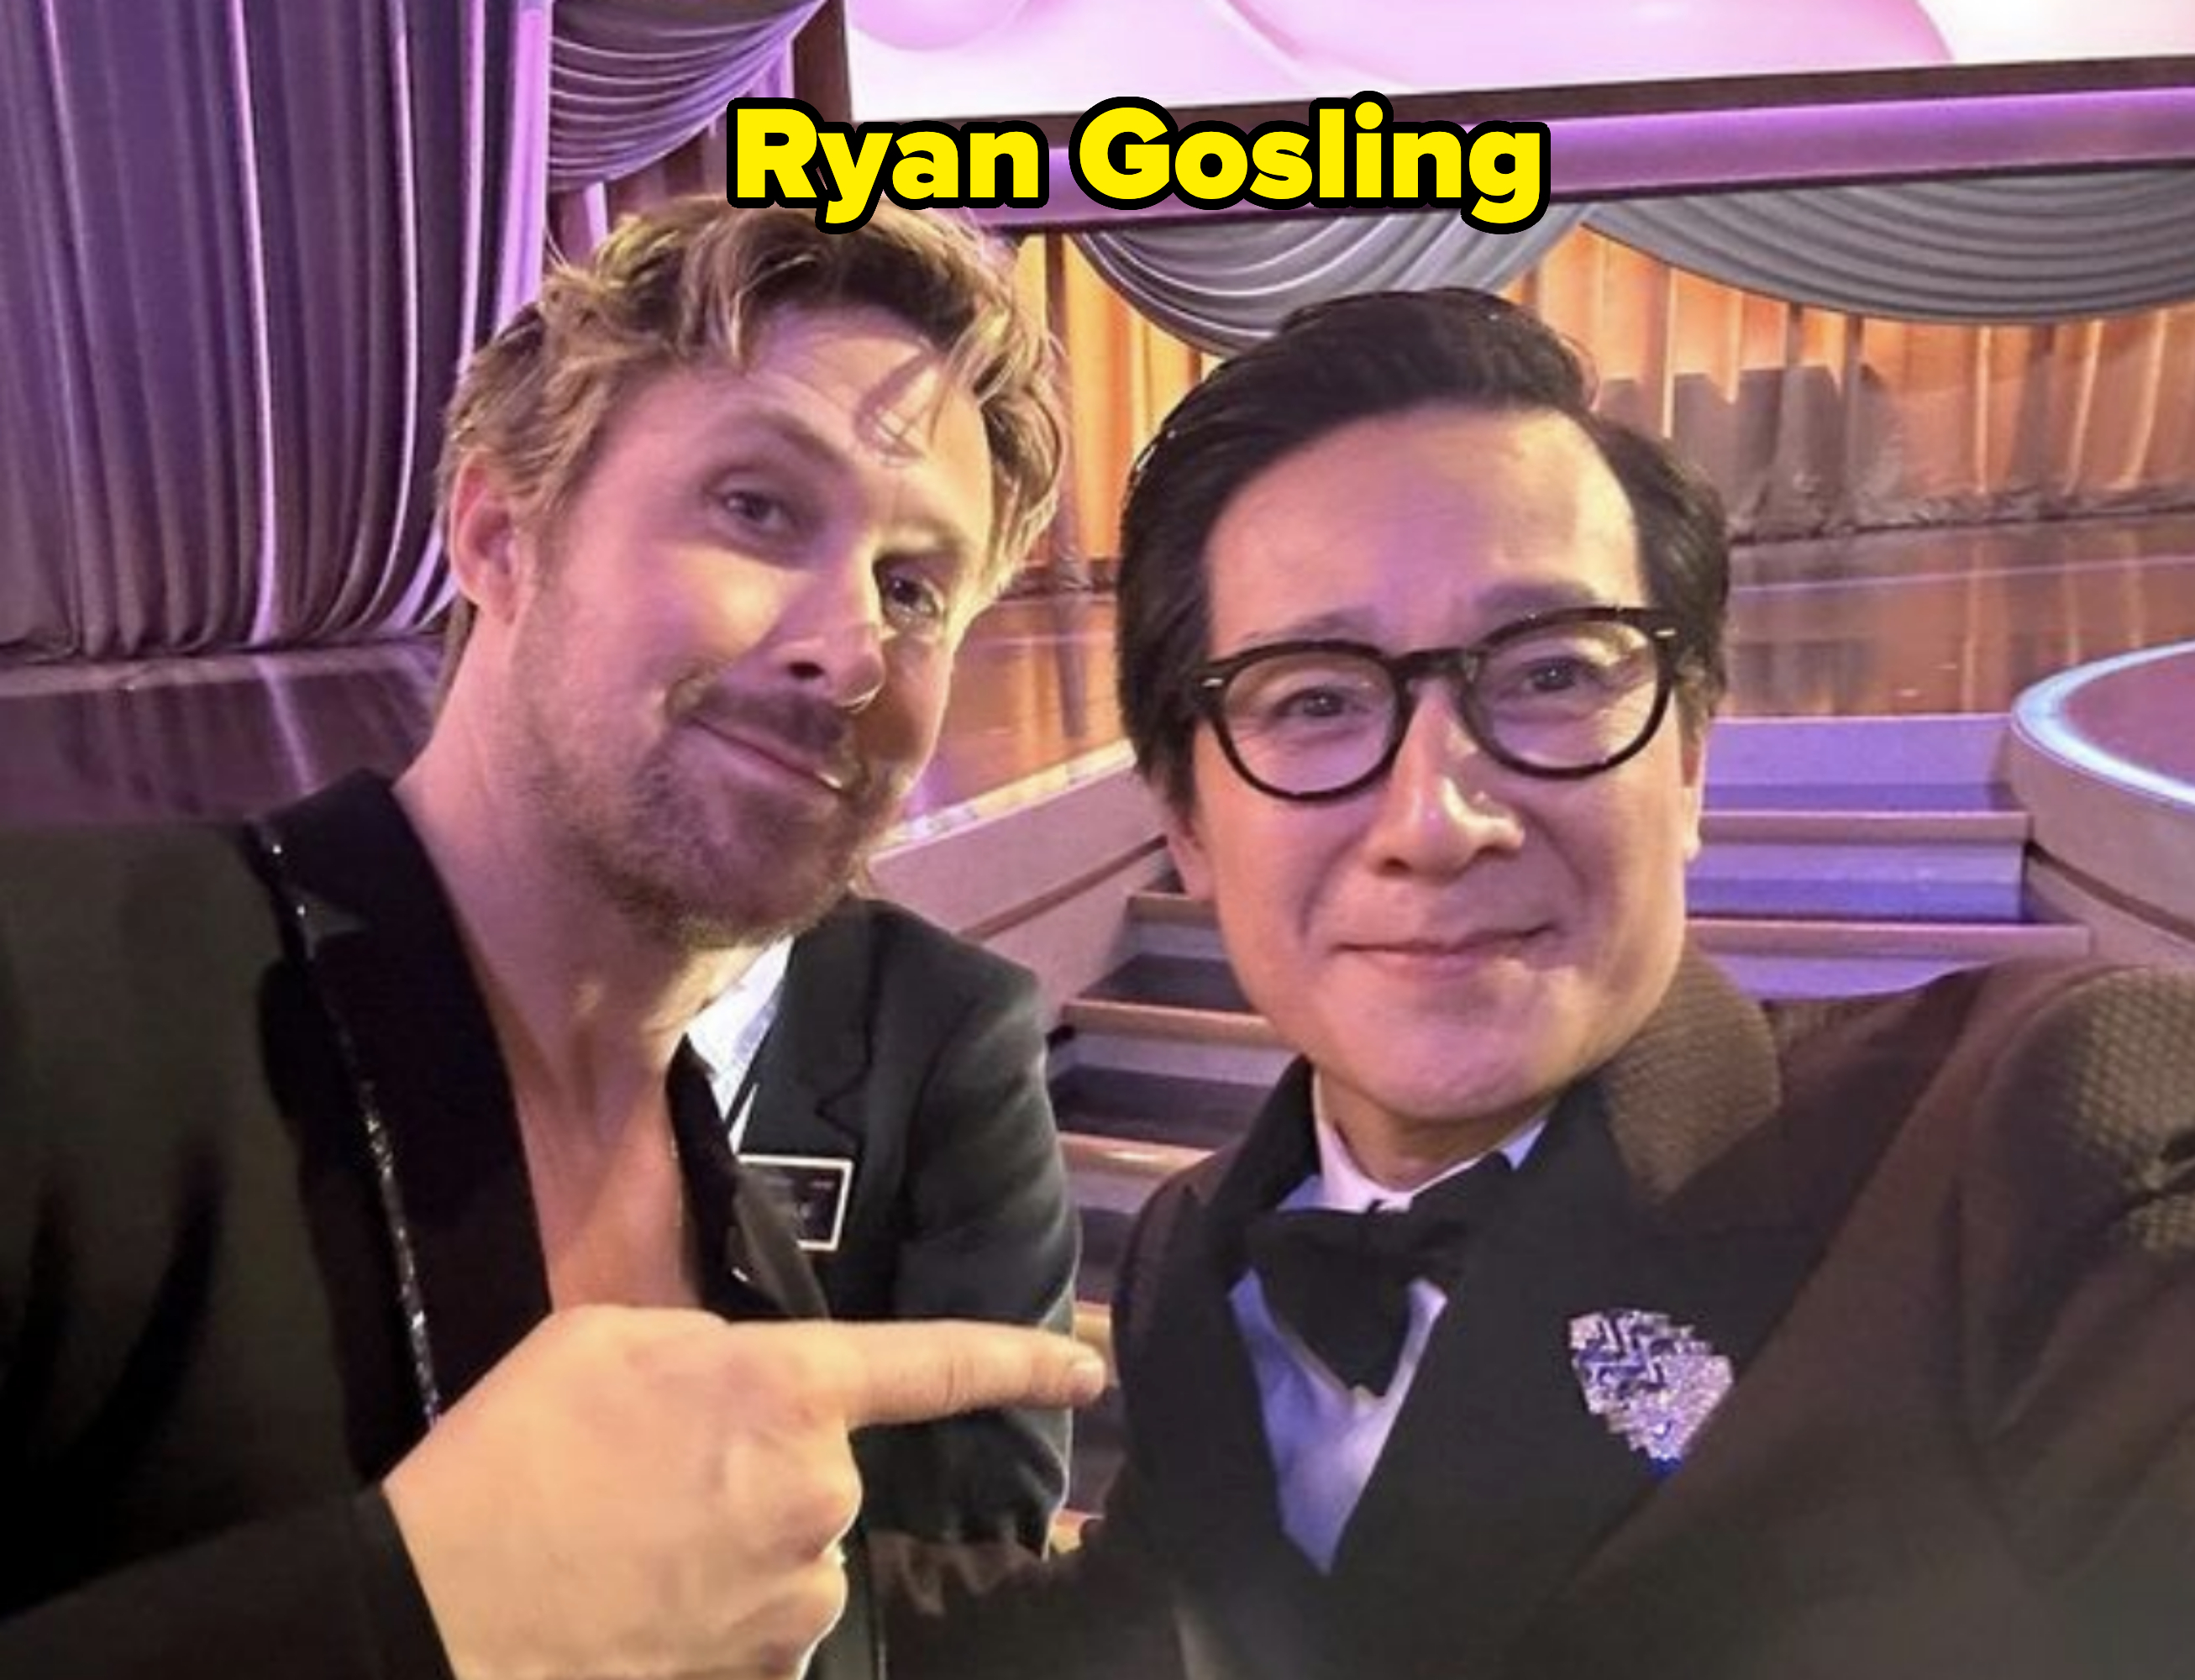 Ryan Gosling and Ke Huy Quan